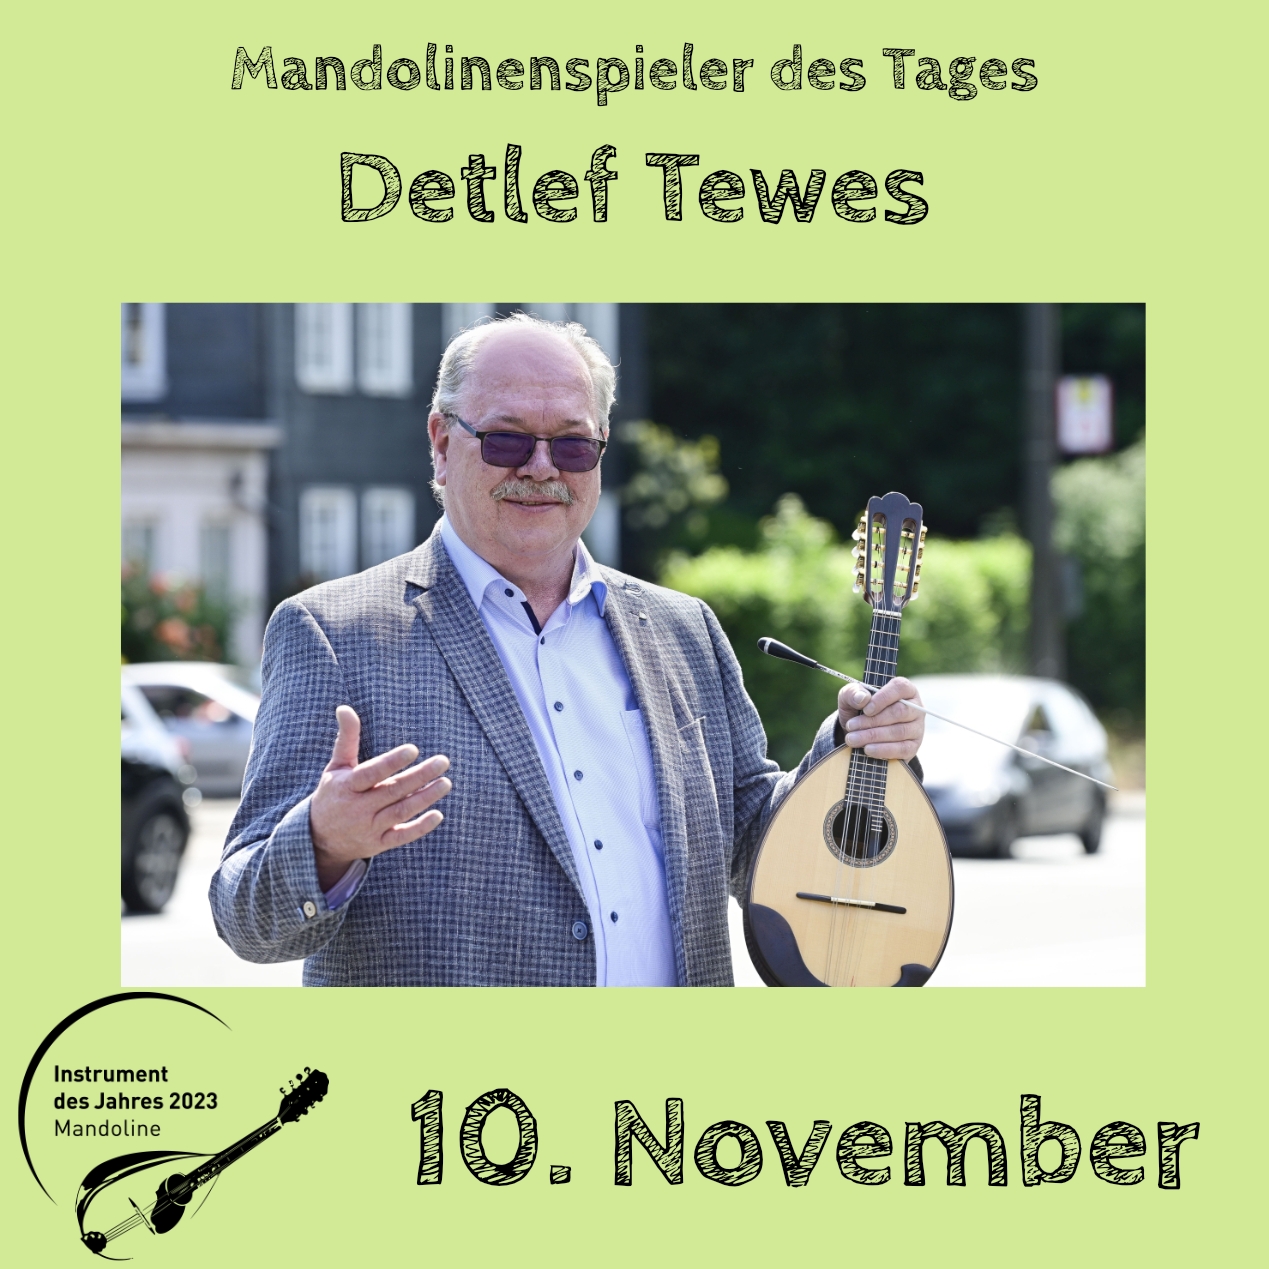 10. November - Detlef Tewes Instrument des Jahres 2023 Mandolinenspieler Mandolinenspielerin des Tages